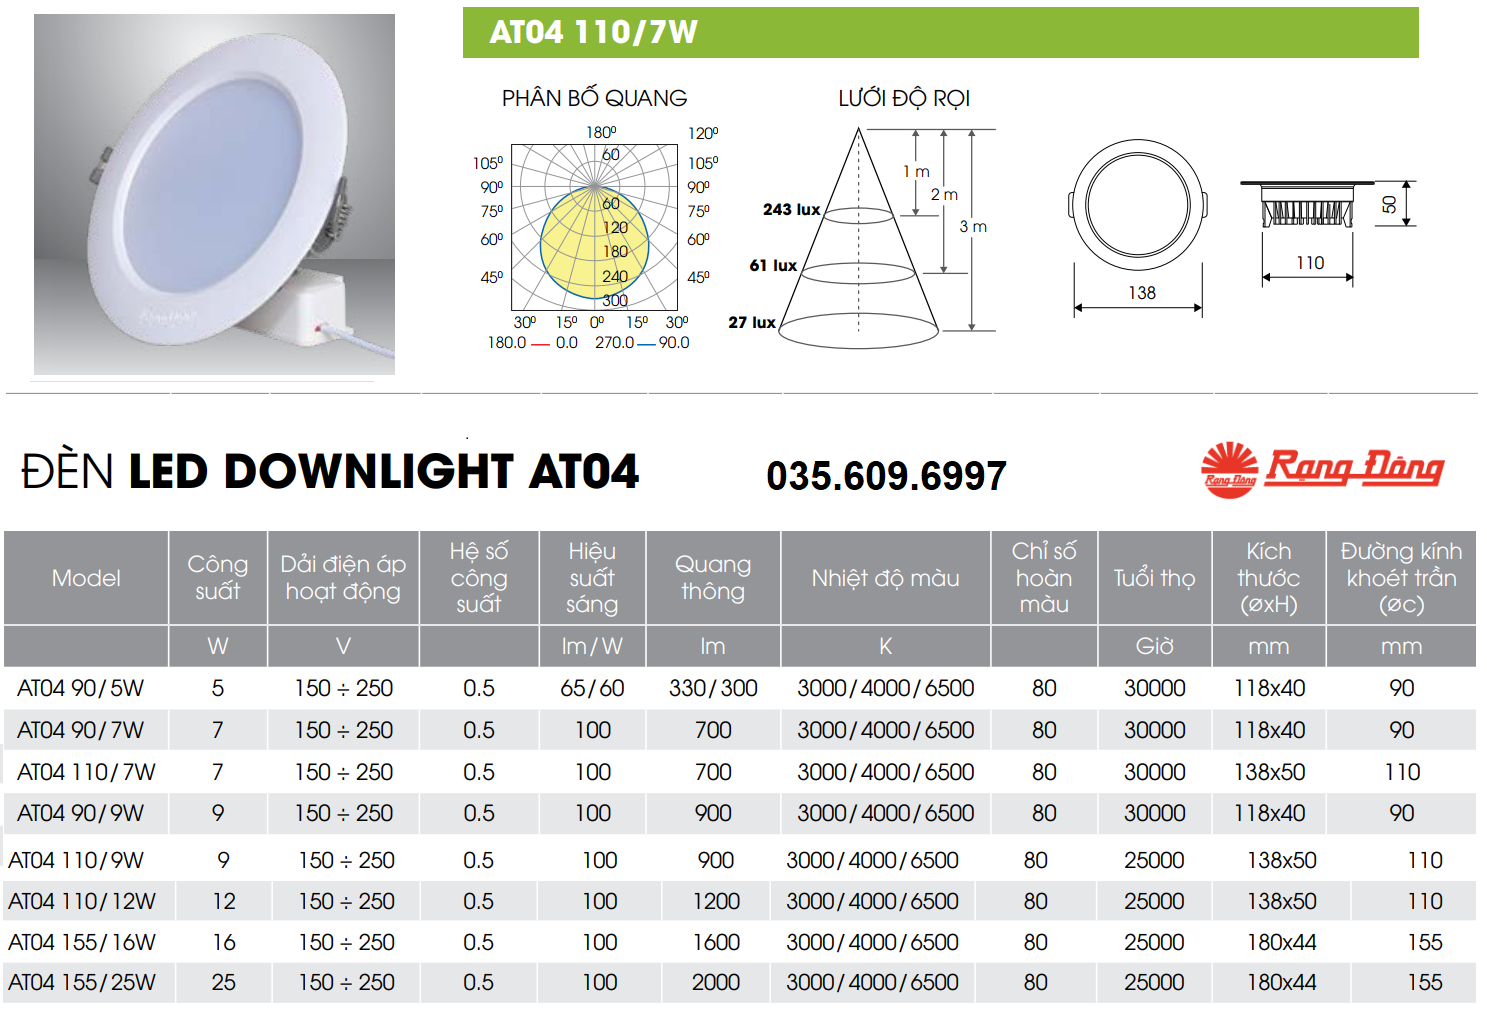 Đèn LED âm trần 7W Rạng Đông AT04 110/7W (Khoét lỗ 110)